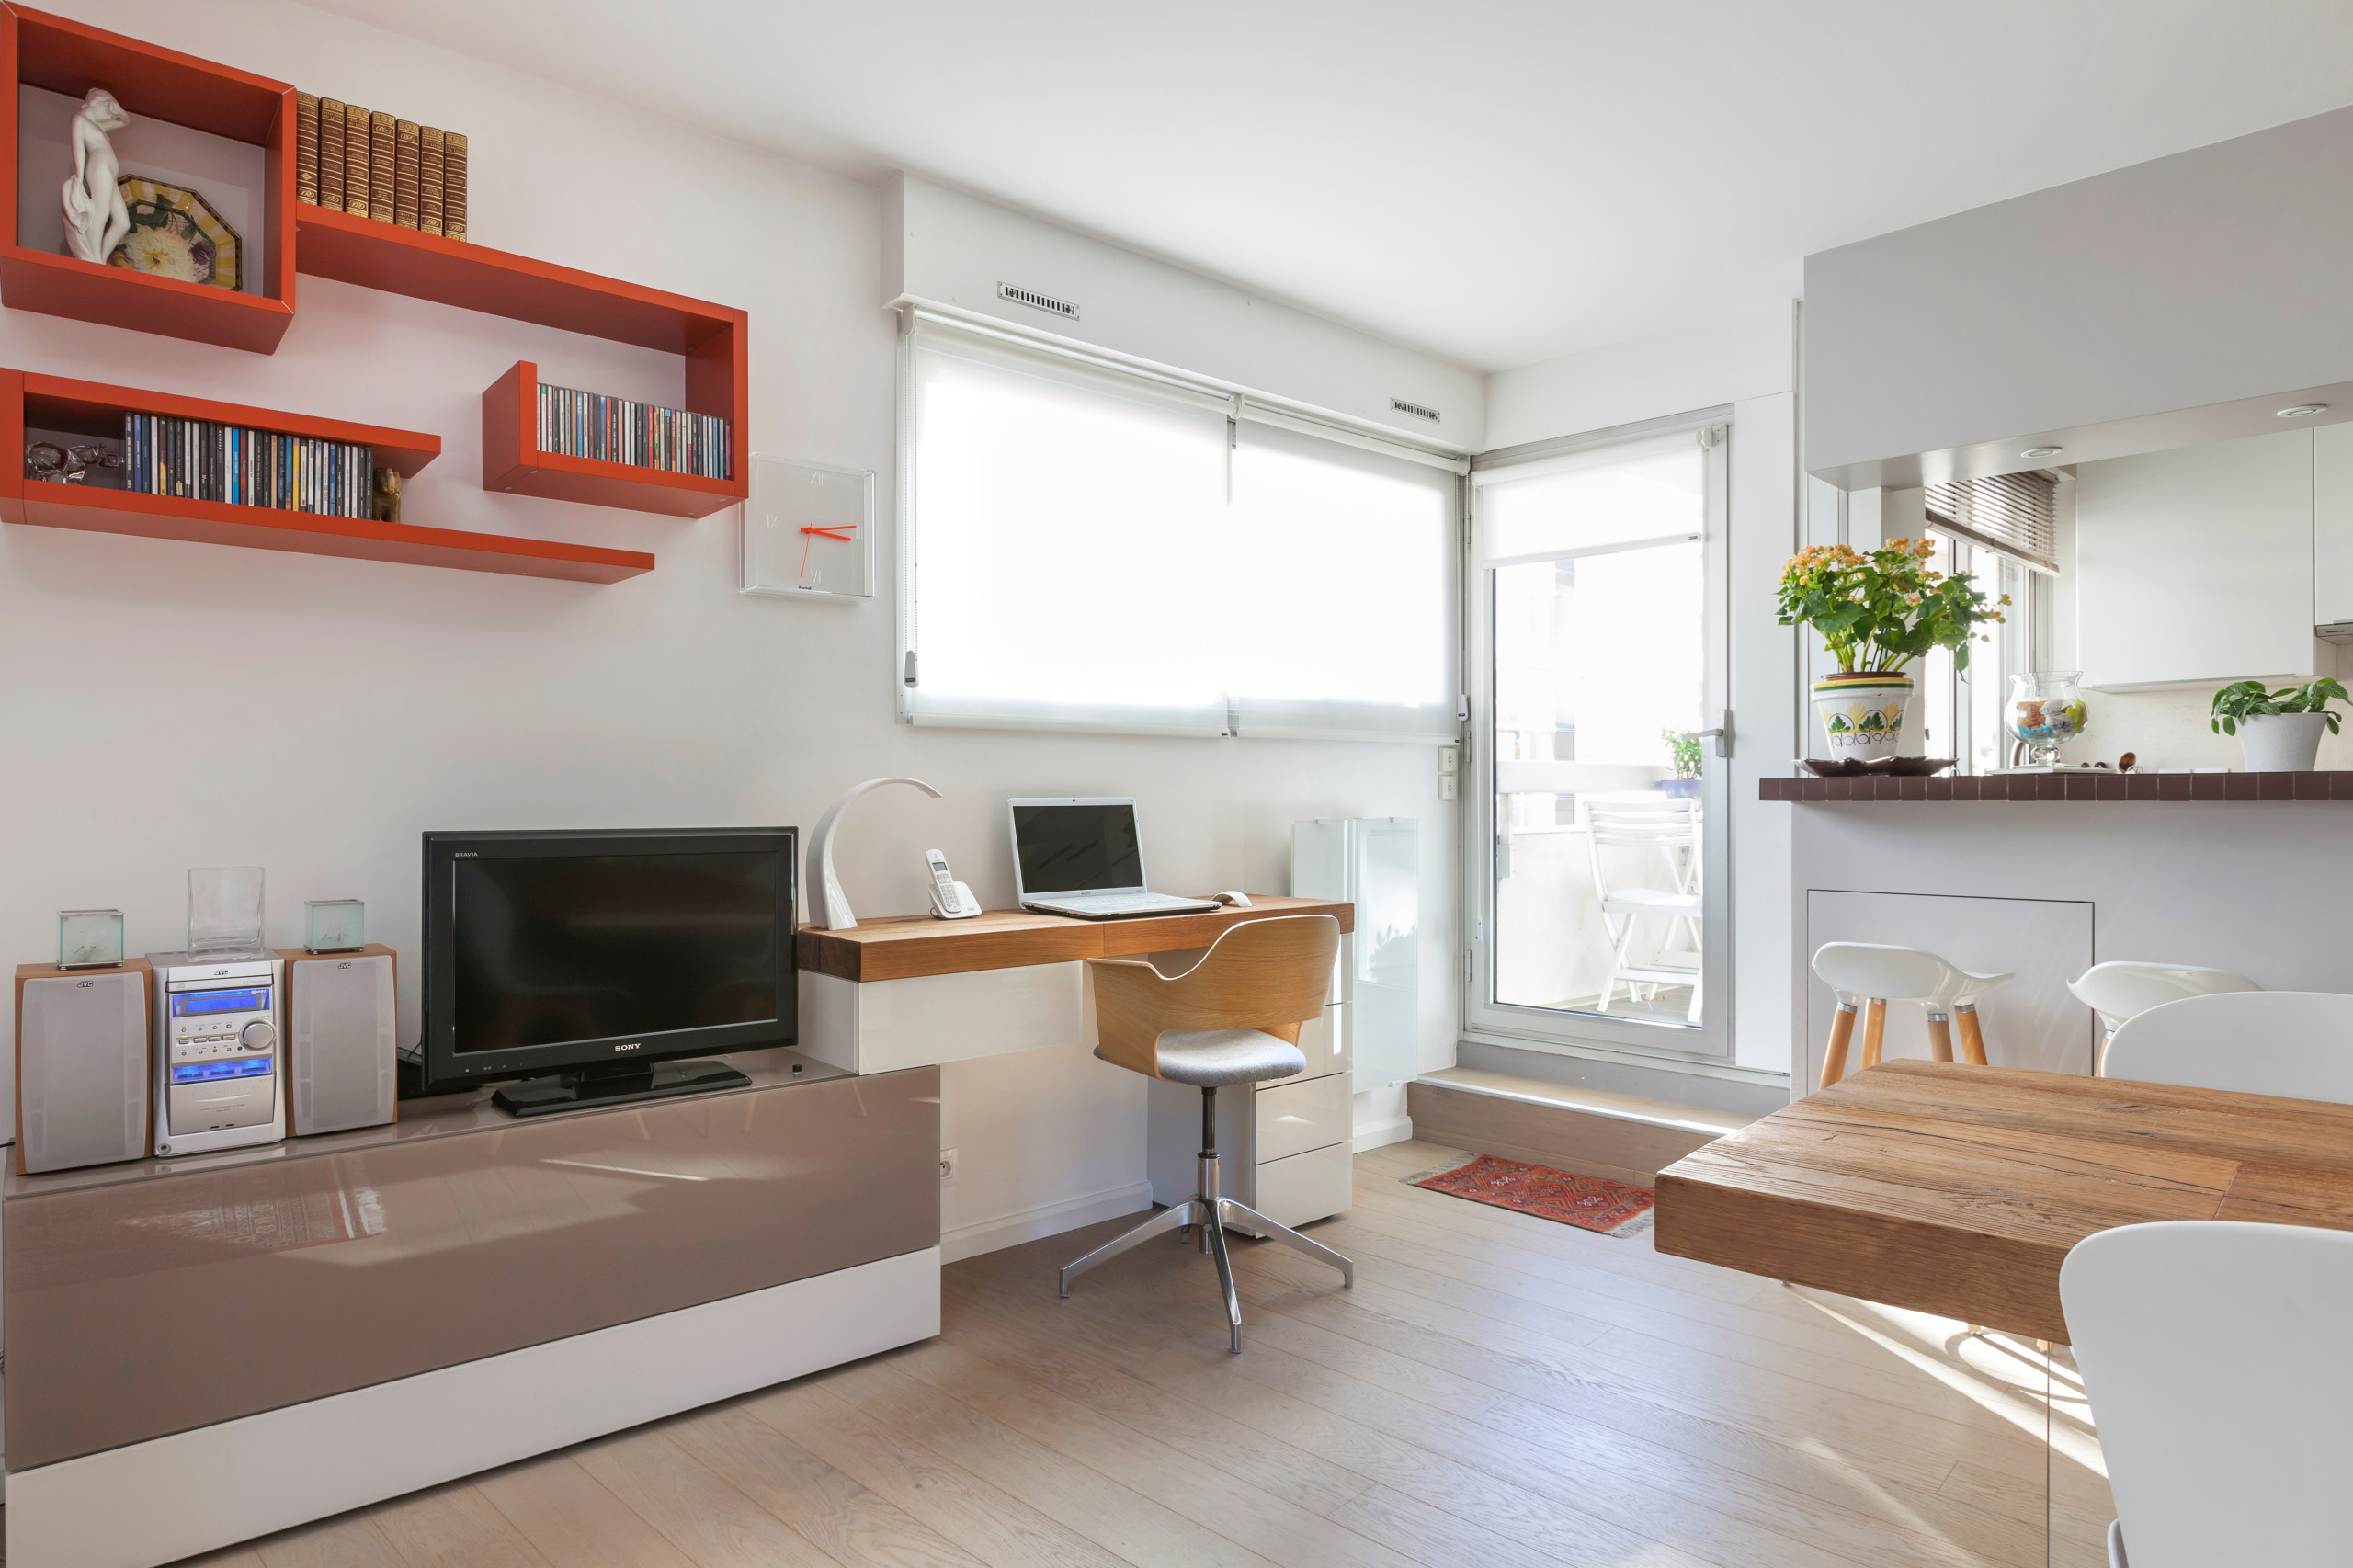 Grande Pièce à vivre avec Bureau, salon, salle à manger - Contemporary -  Home Office - Paris - by Arlydesign | Houzz